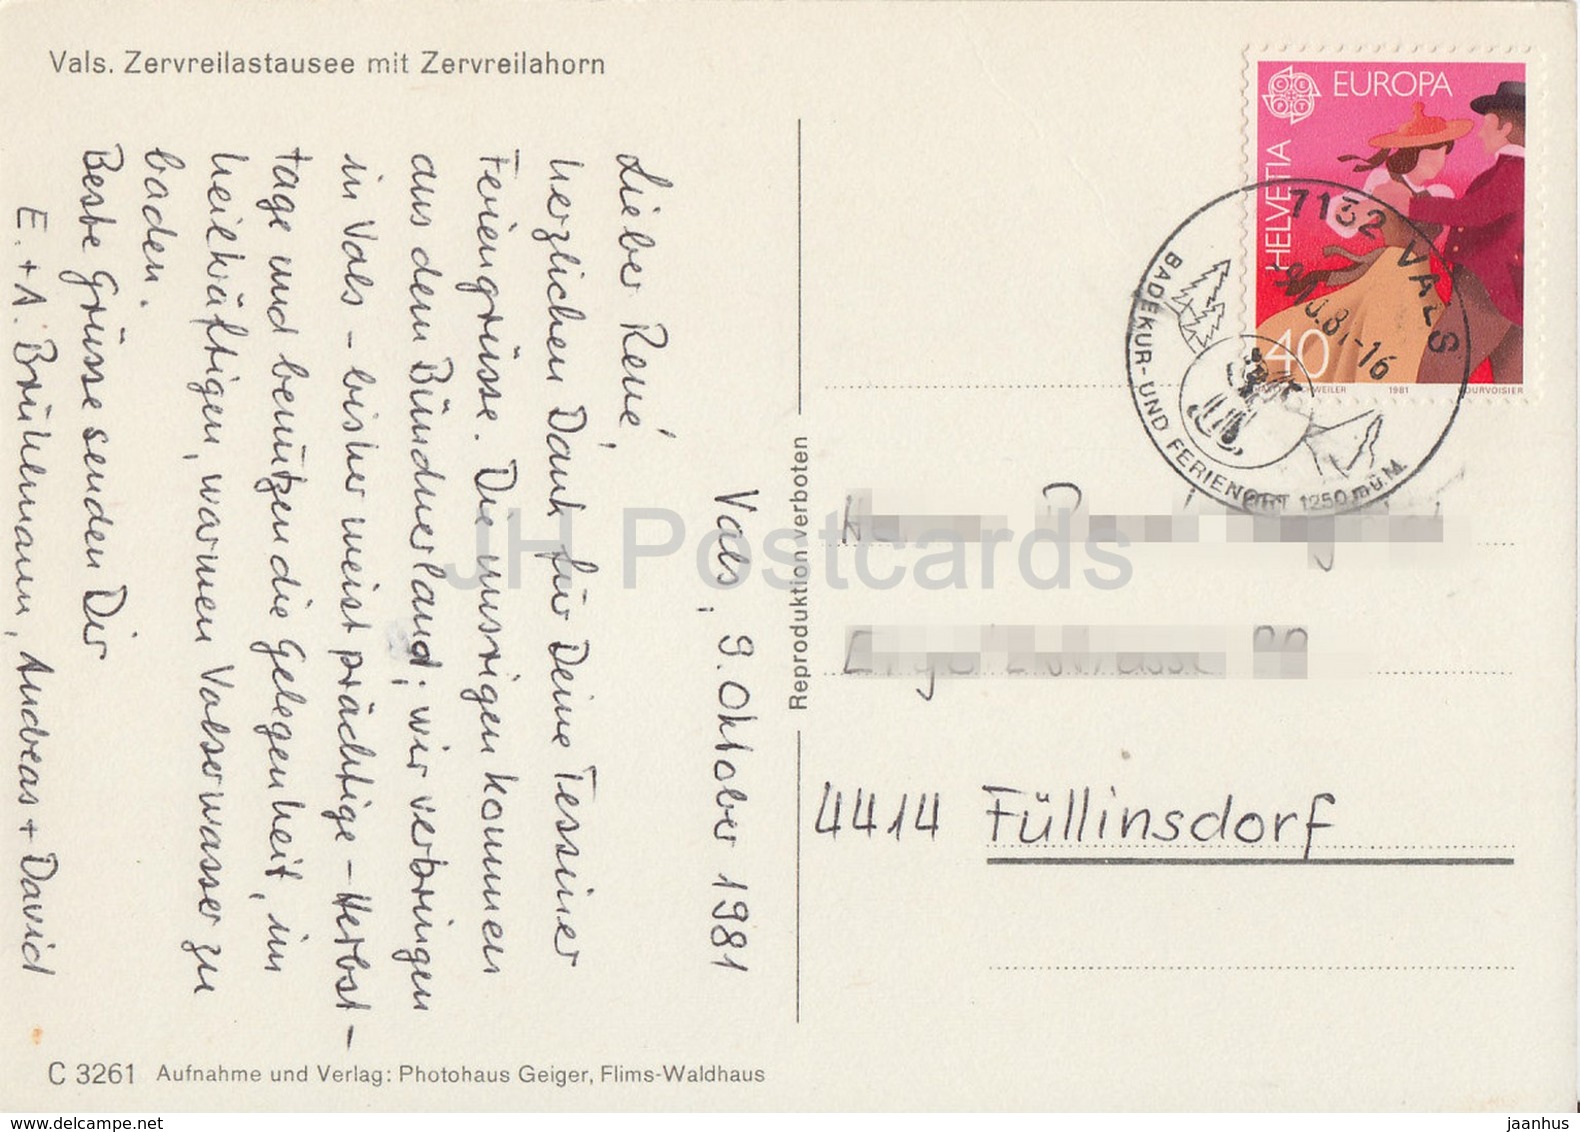 Vals - Zervreilastausee Mit Zervreilahorn - 1981 - Switzerland - Used - Vals